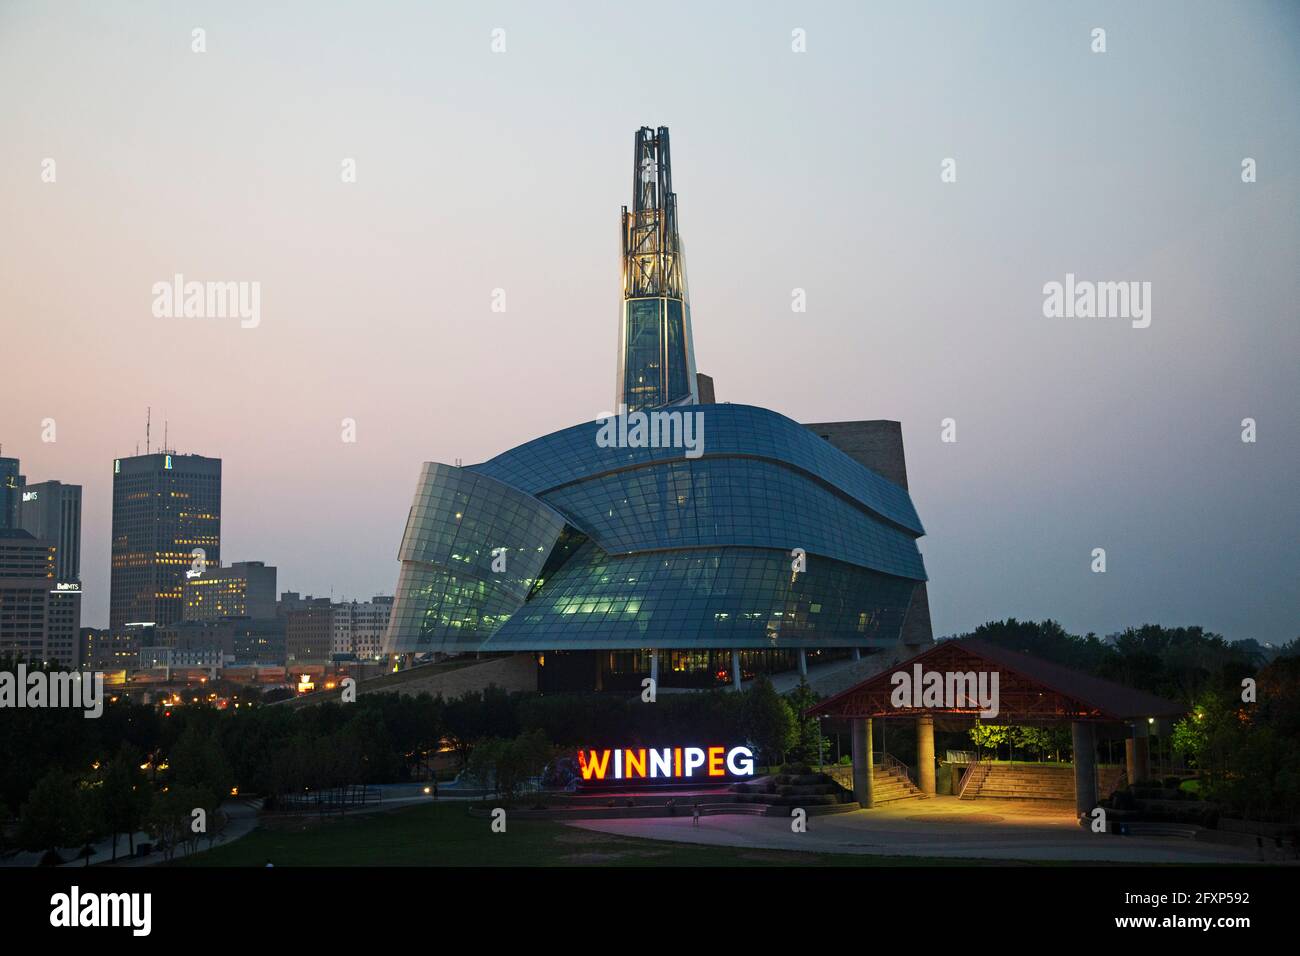 Insegna illuminata di Winnipeg all'esterno del Canadian Museum for Human Rights a Manitoba, Canada. Il museo è visto come la notte cade su Winnipeg. Foto Stock